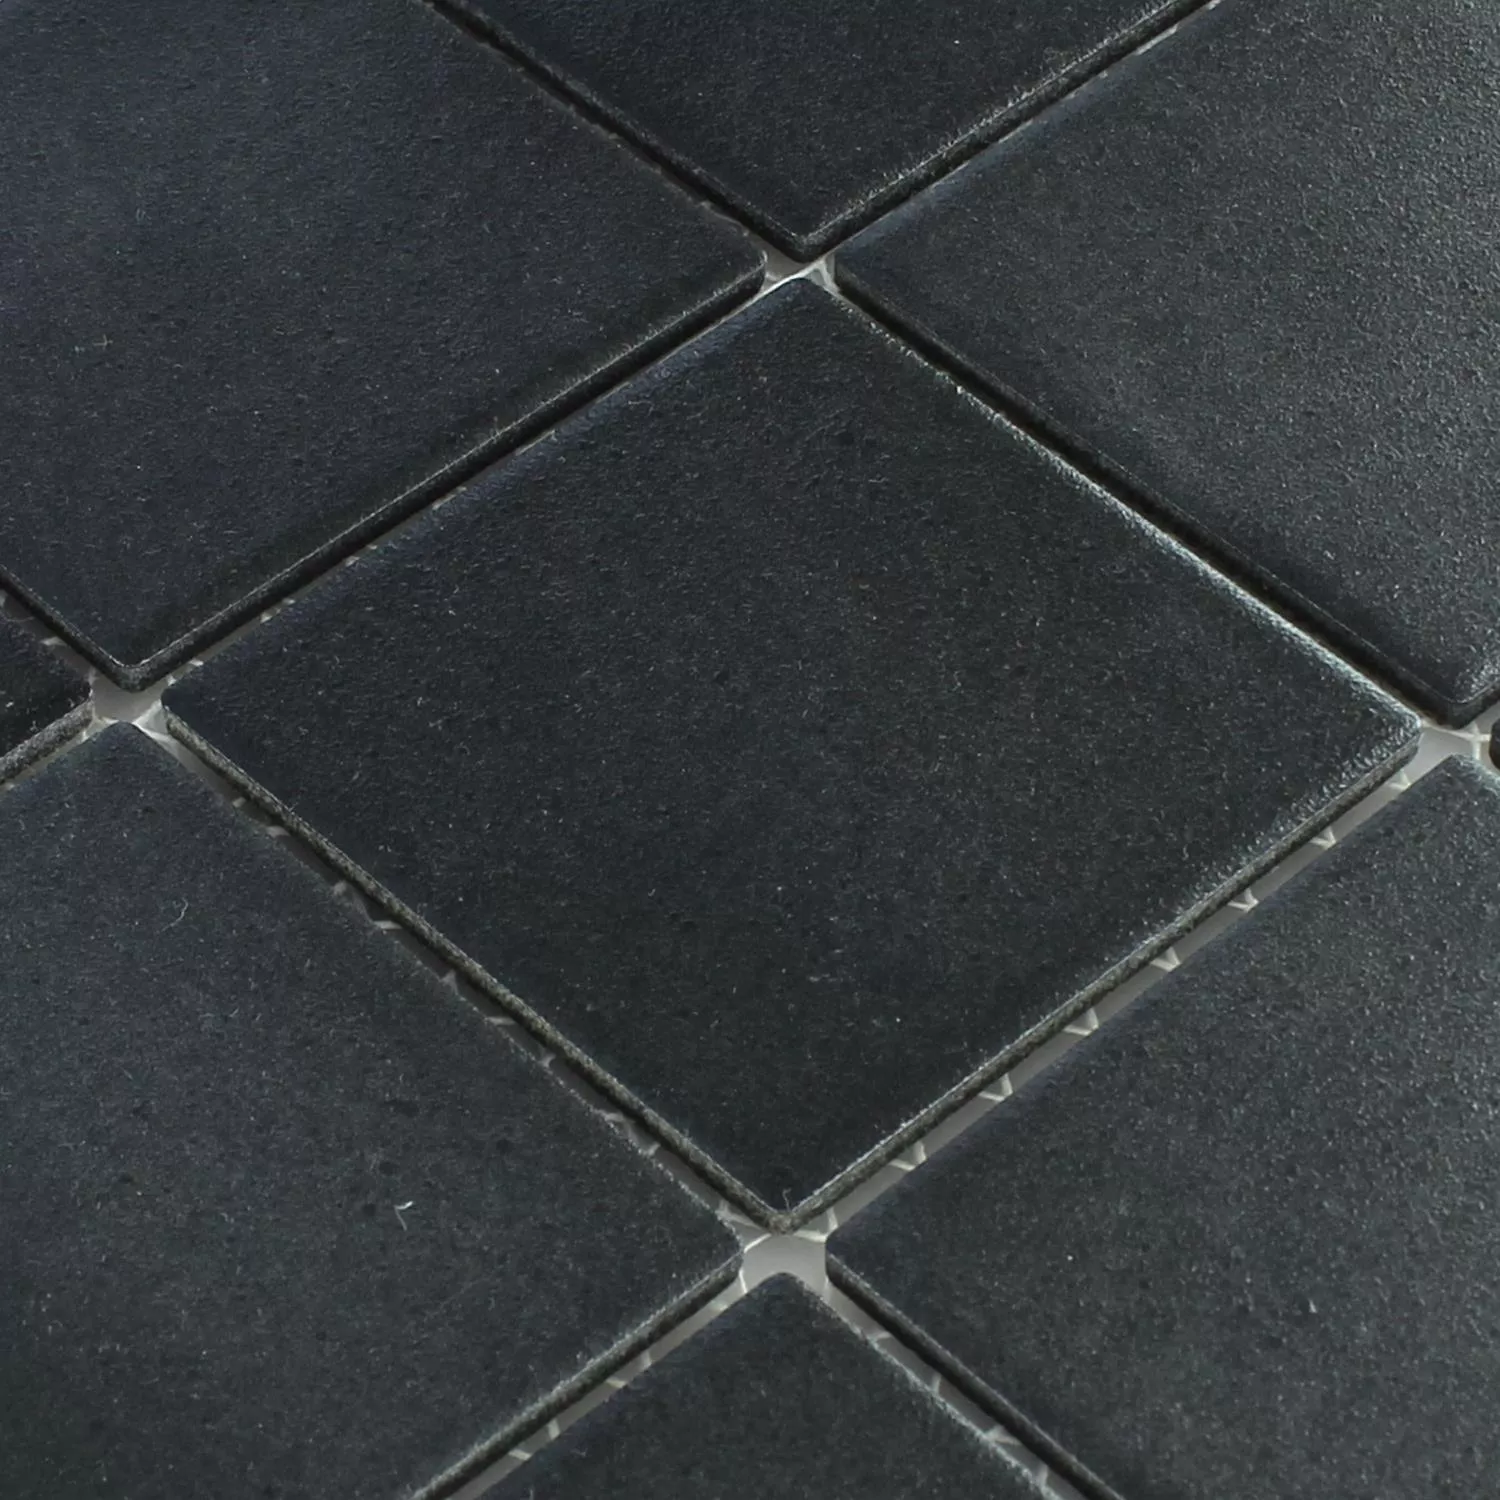 Mosaic Tiles Ceramic Black Uni Non-Slip